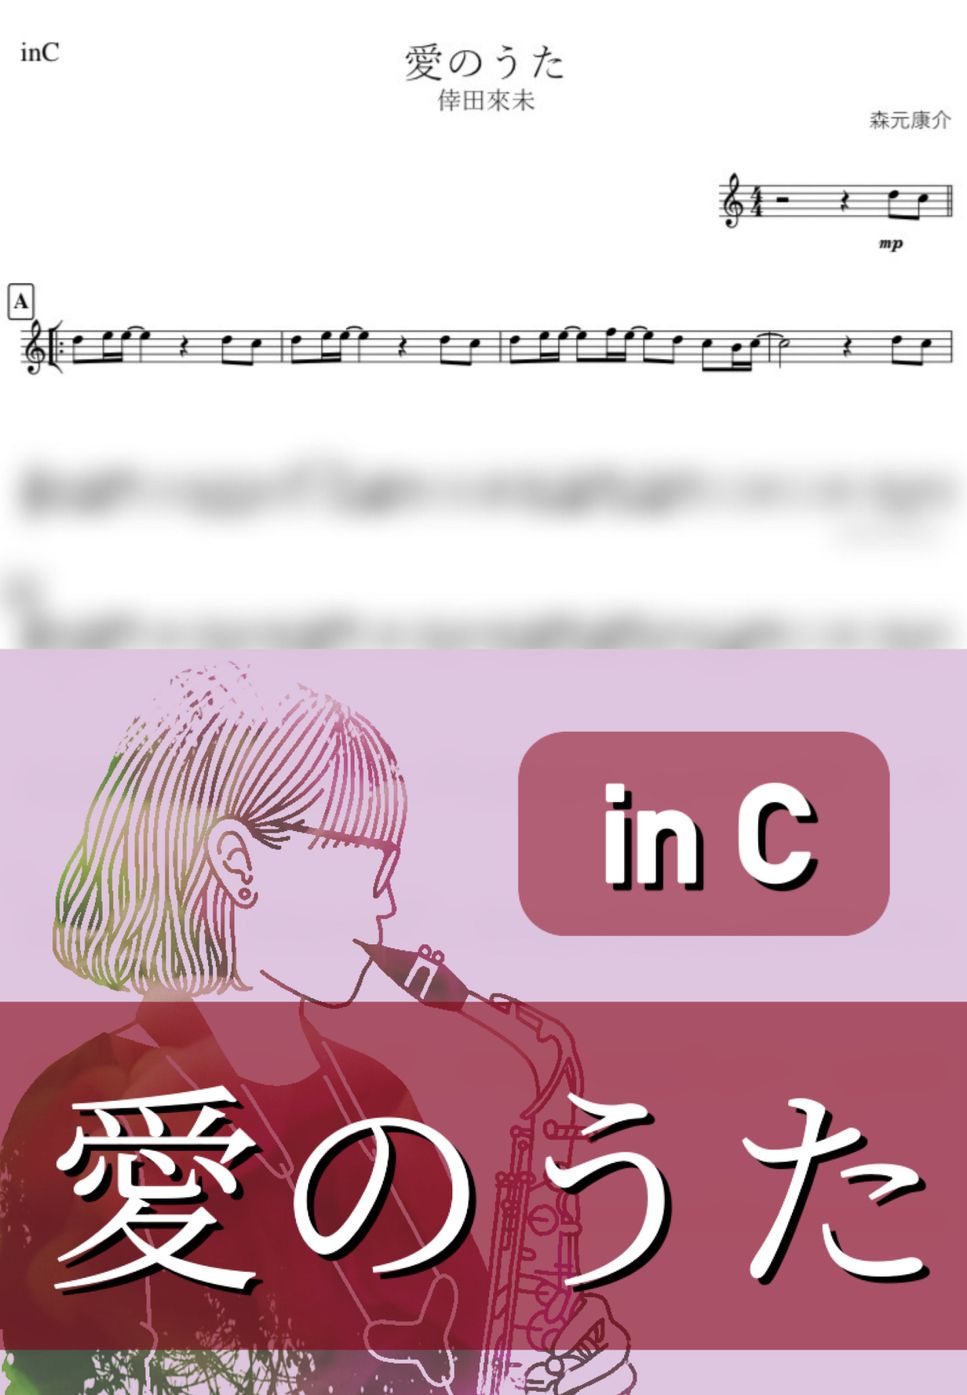 倖田 來未 - 愛のうた (C) by kanamusic